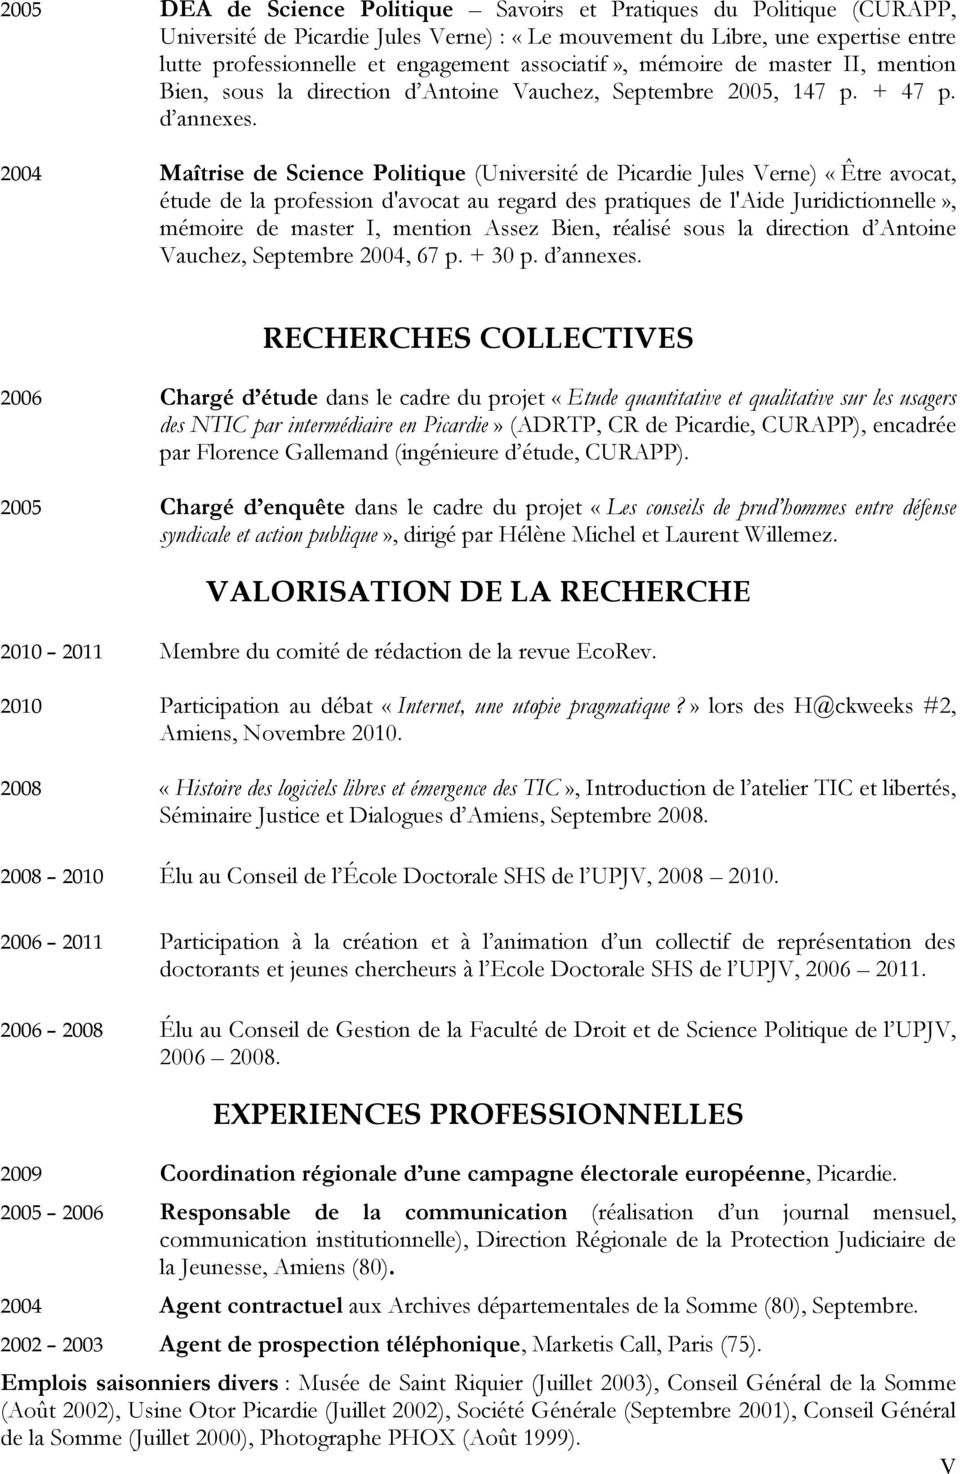 2004 Maîtrise de Science Politique (Université de Picardie Jules Verne) «Être avocat, étude de la profession d'avocat au regard des pratiques de l'aide Juridictionnelle», mémoire de master I, mention